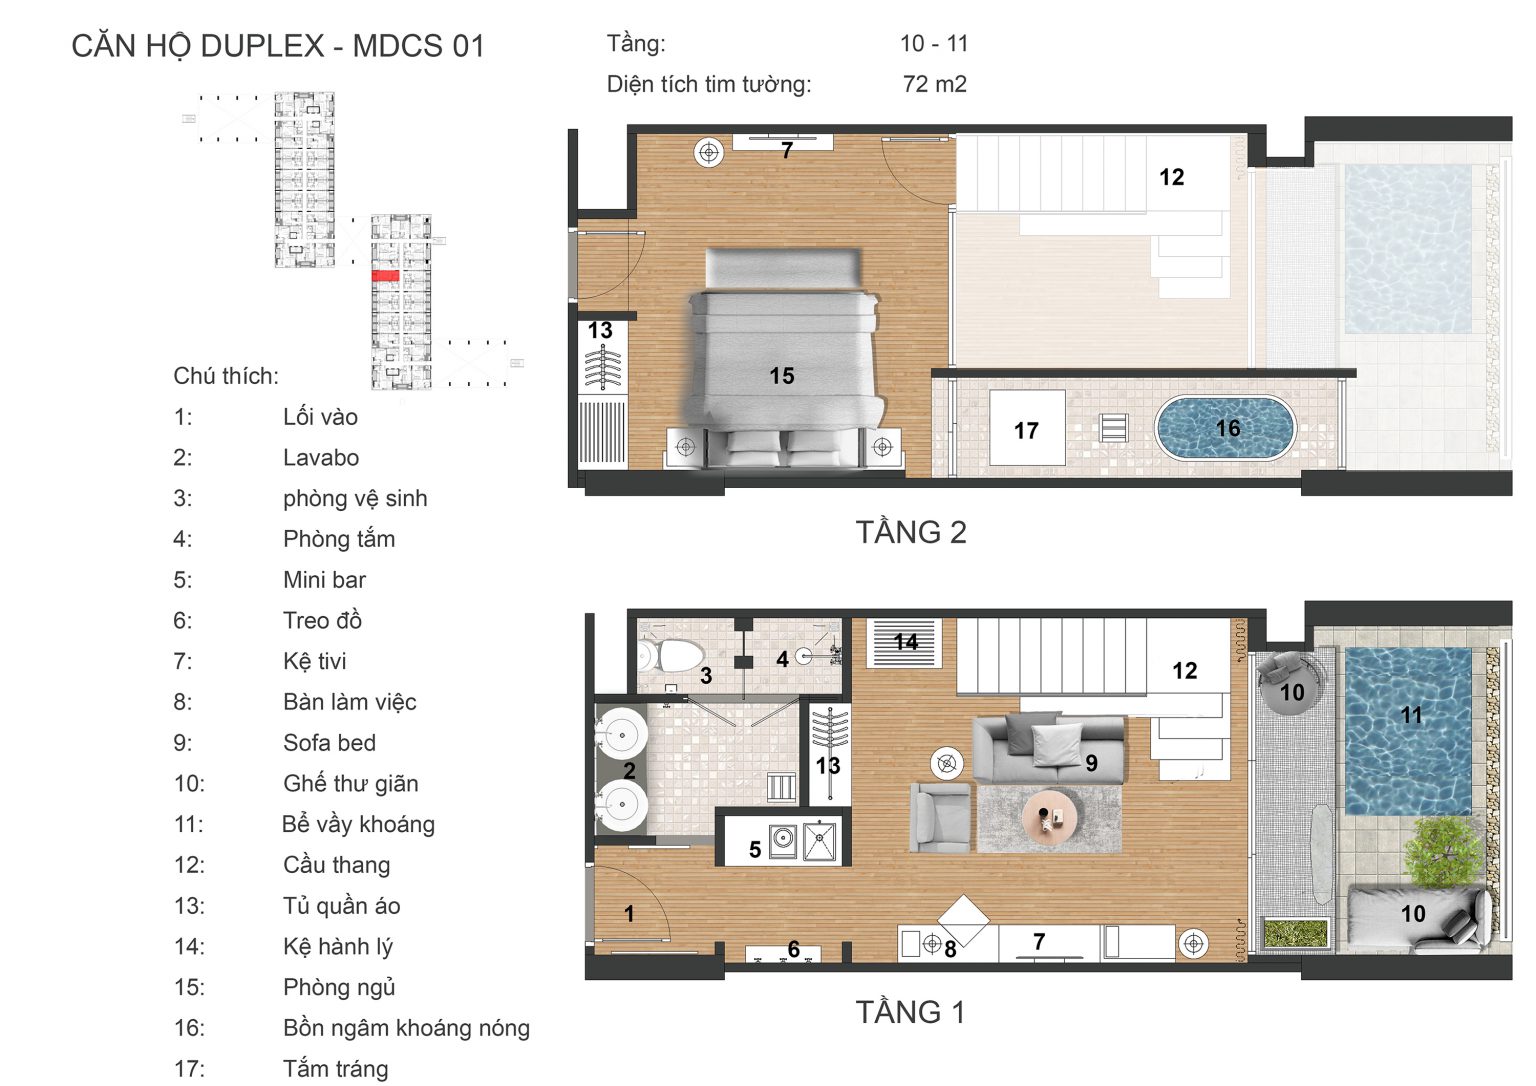 thiết kế căn hộ duplex